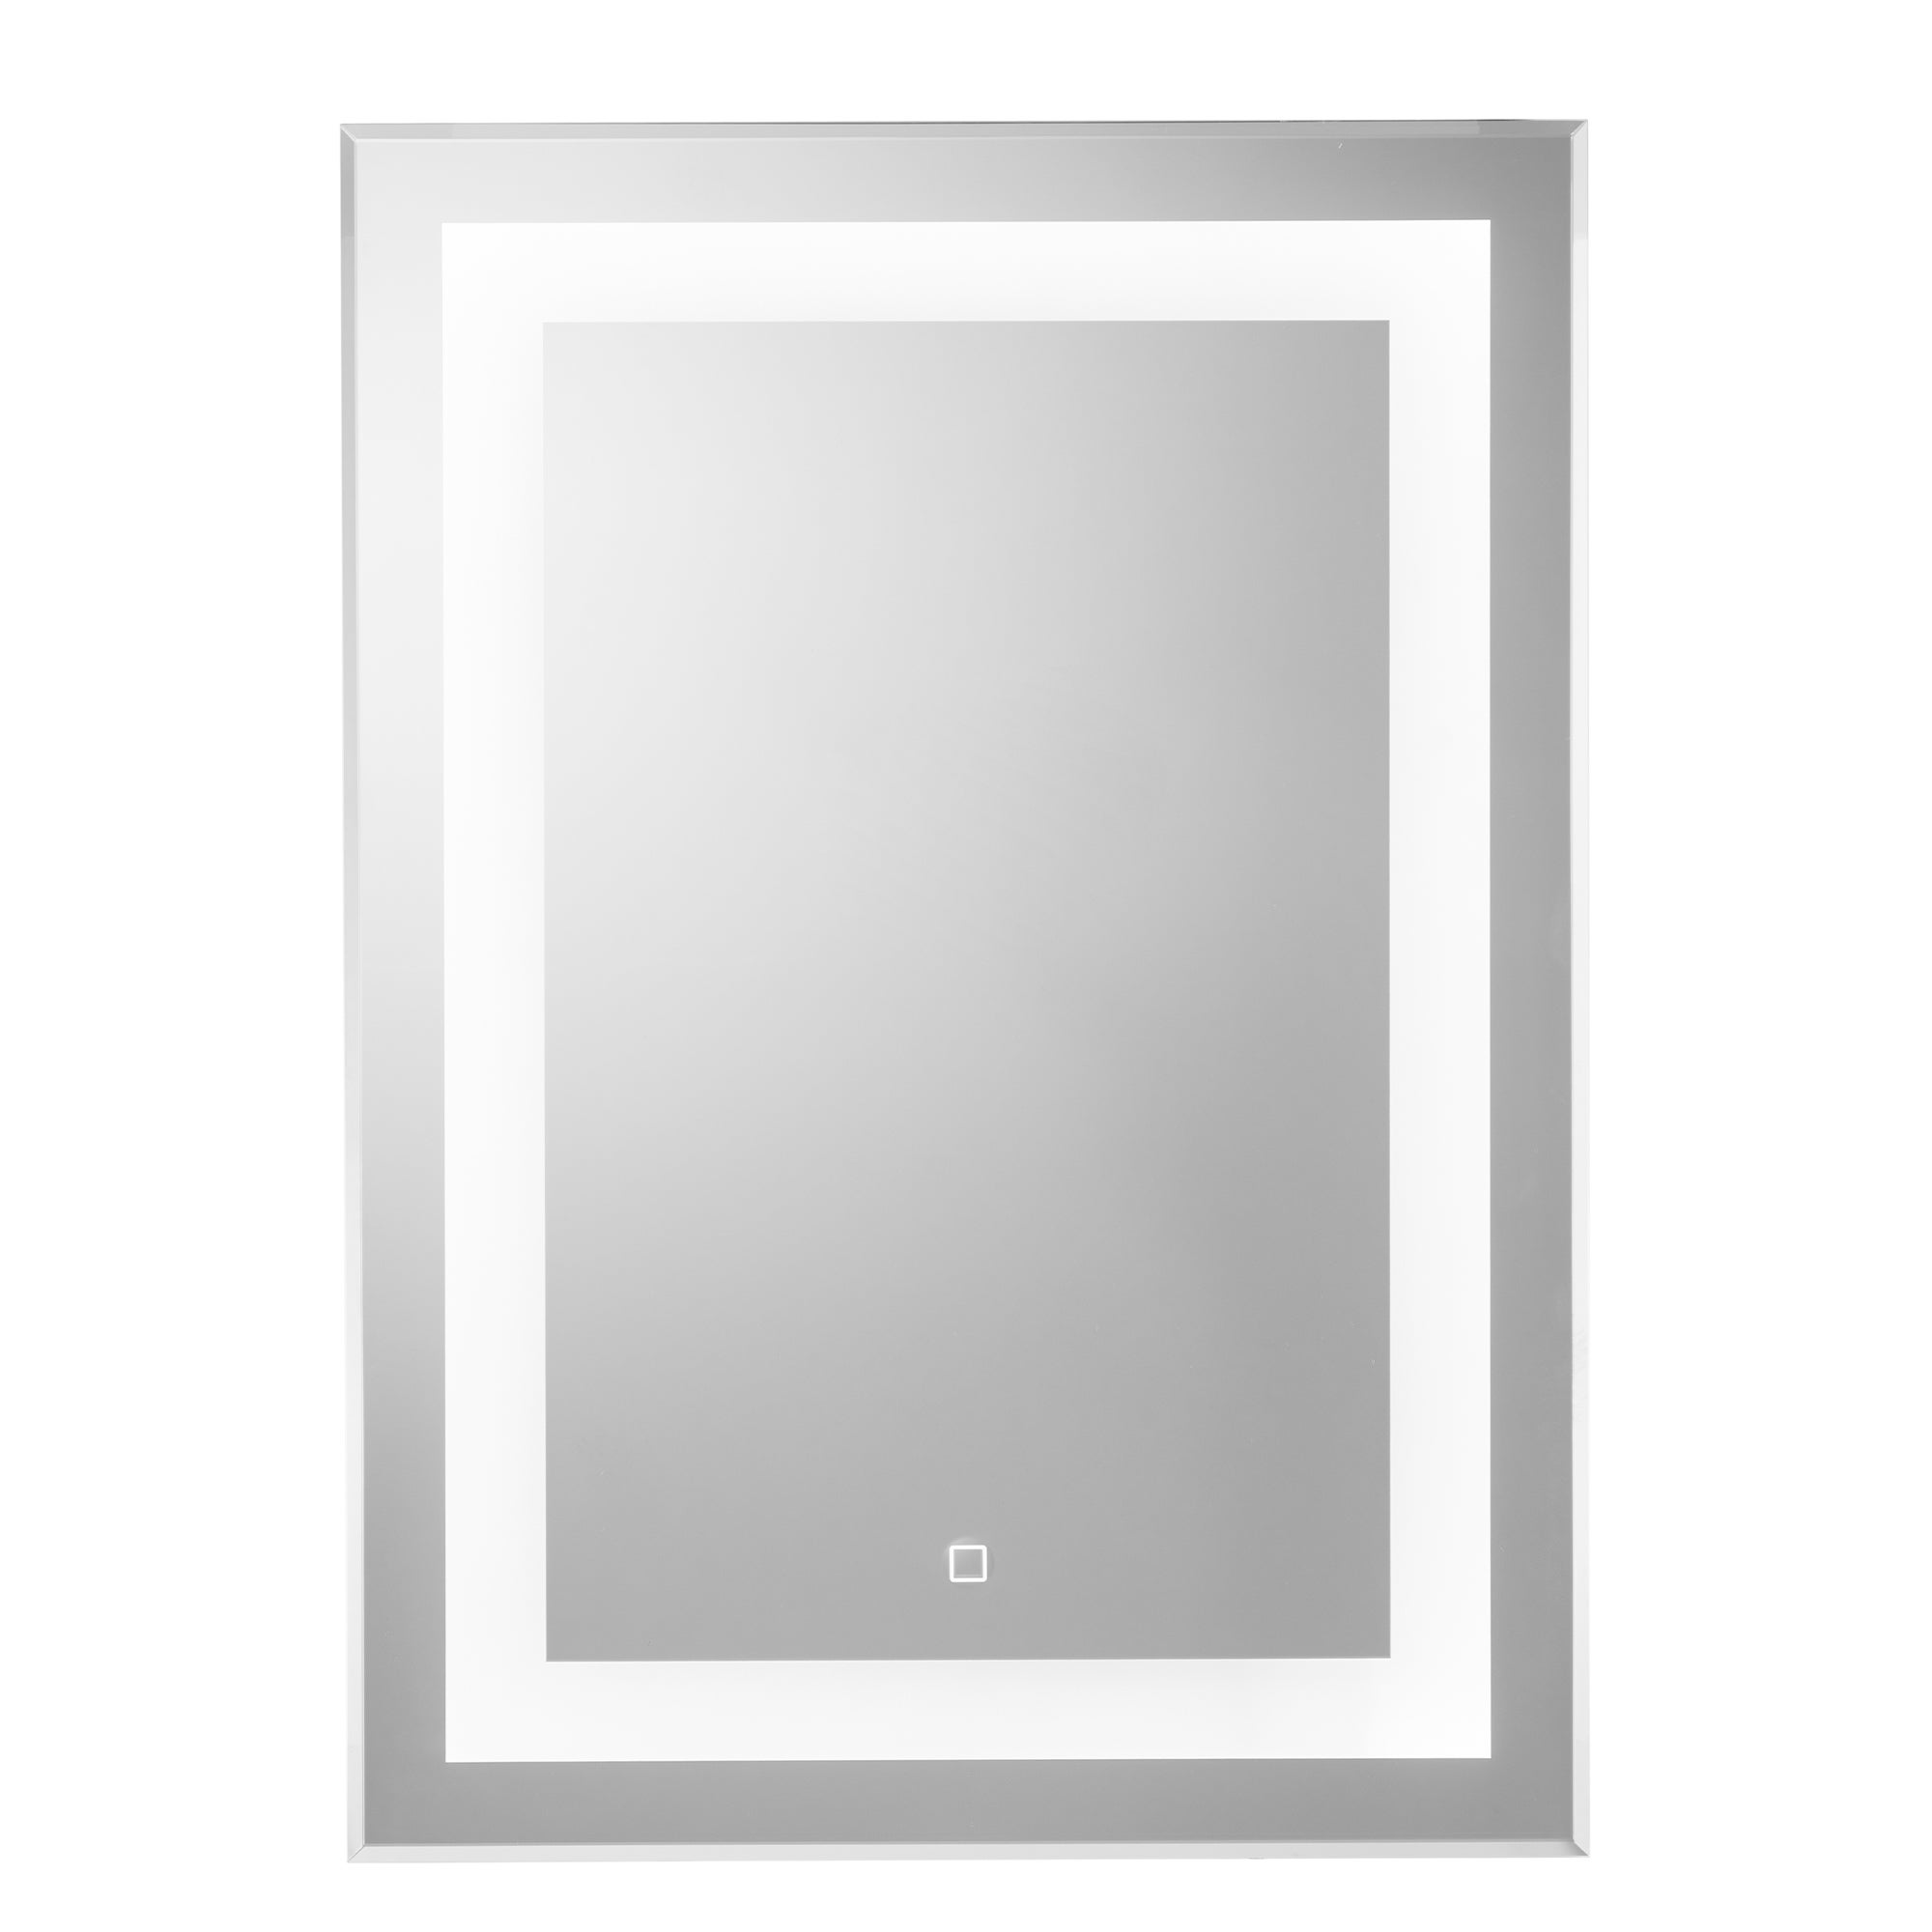 Croydex Rookley LED Bathroom Wall Mirror